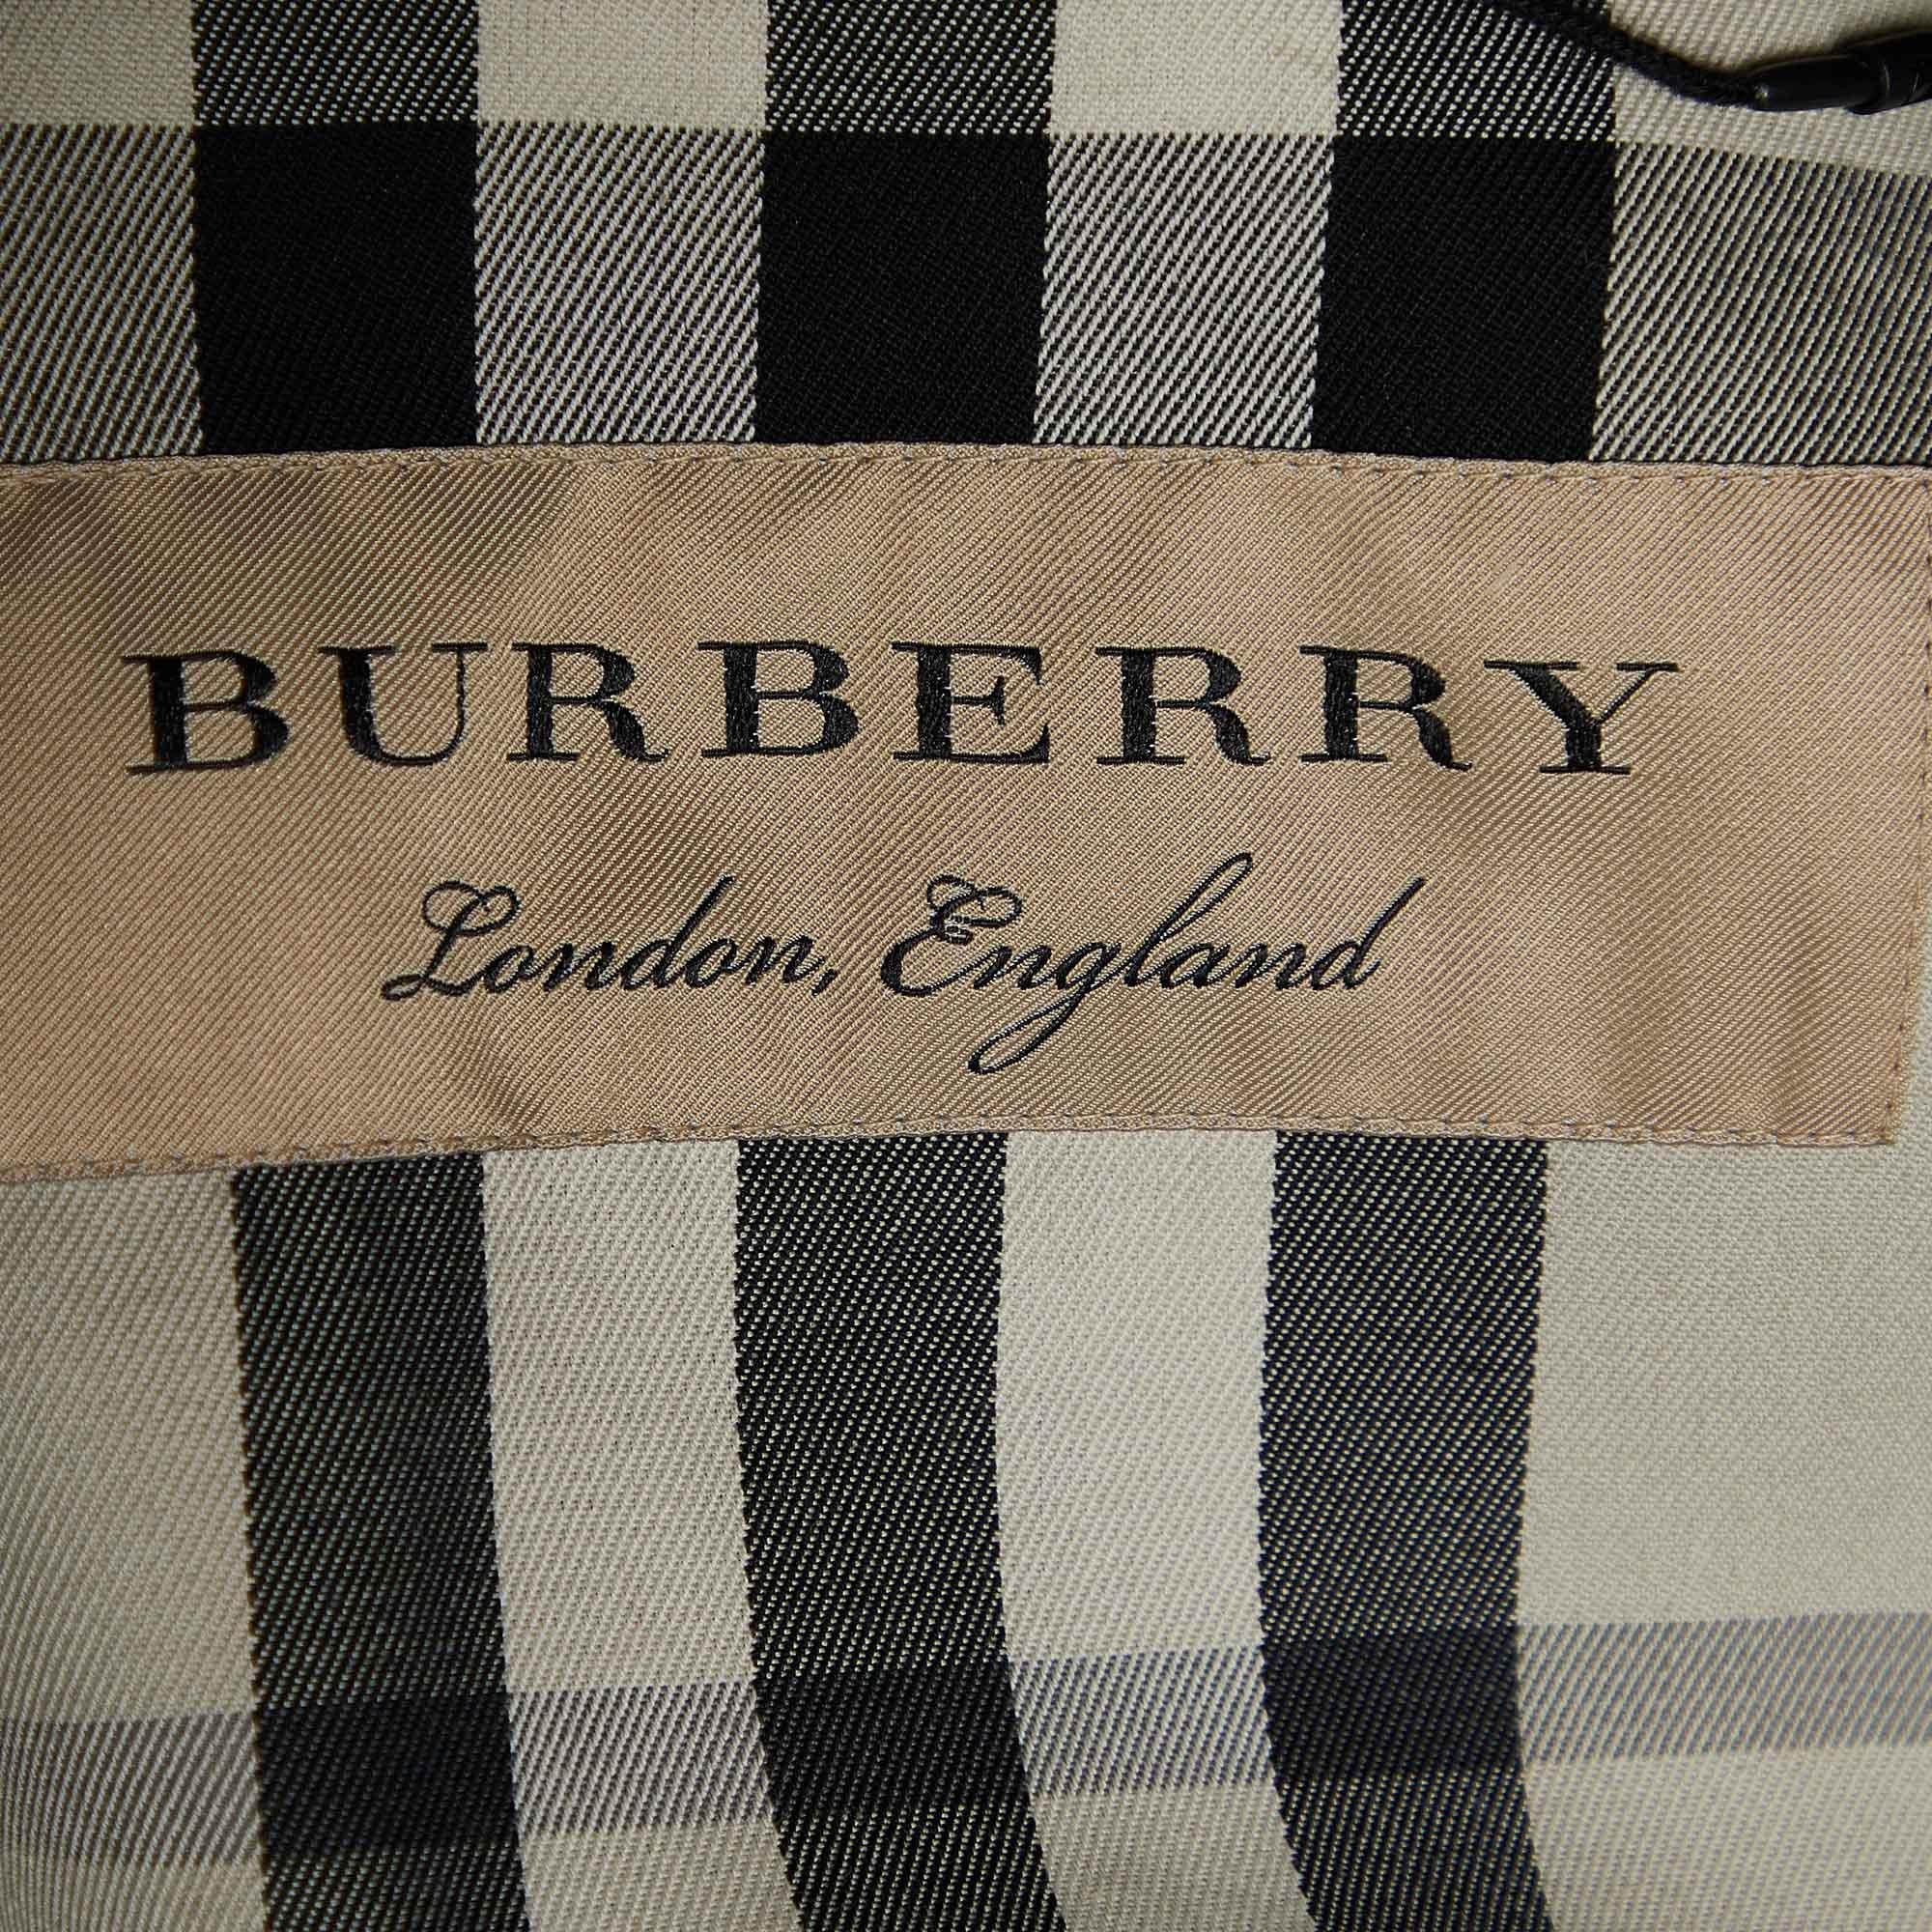  Burberry - Trench-coat Harbourne en coton noir à double boutonnage S Pour femmes 